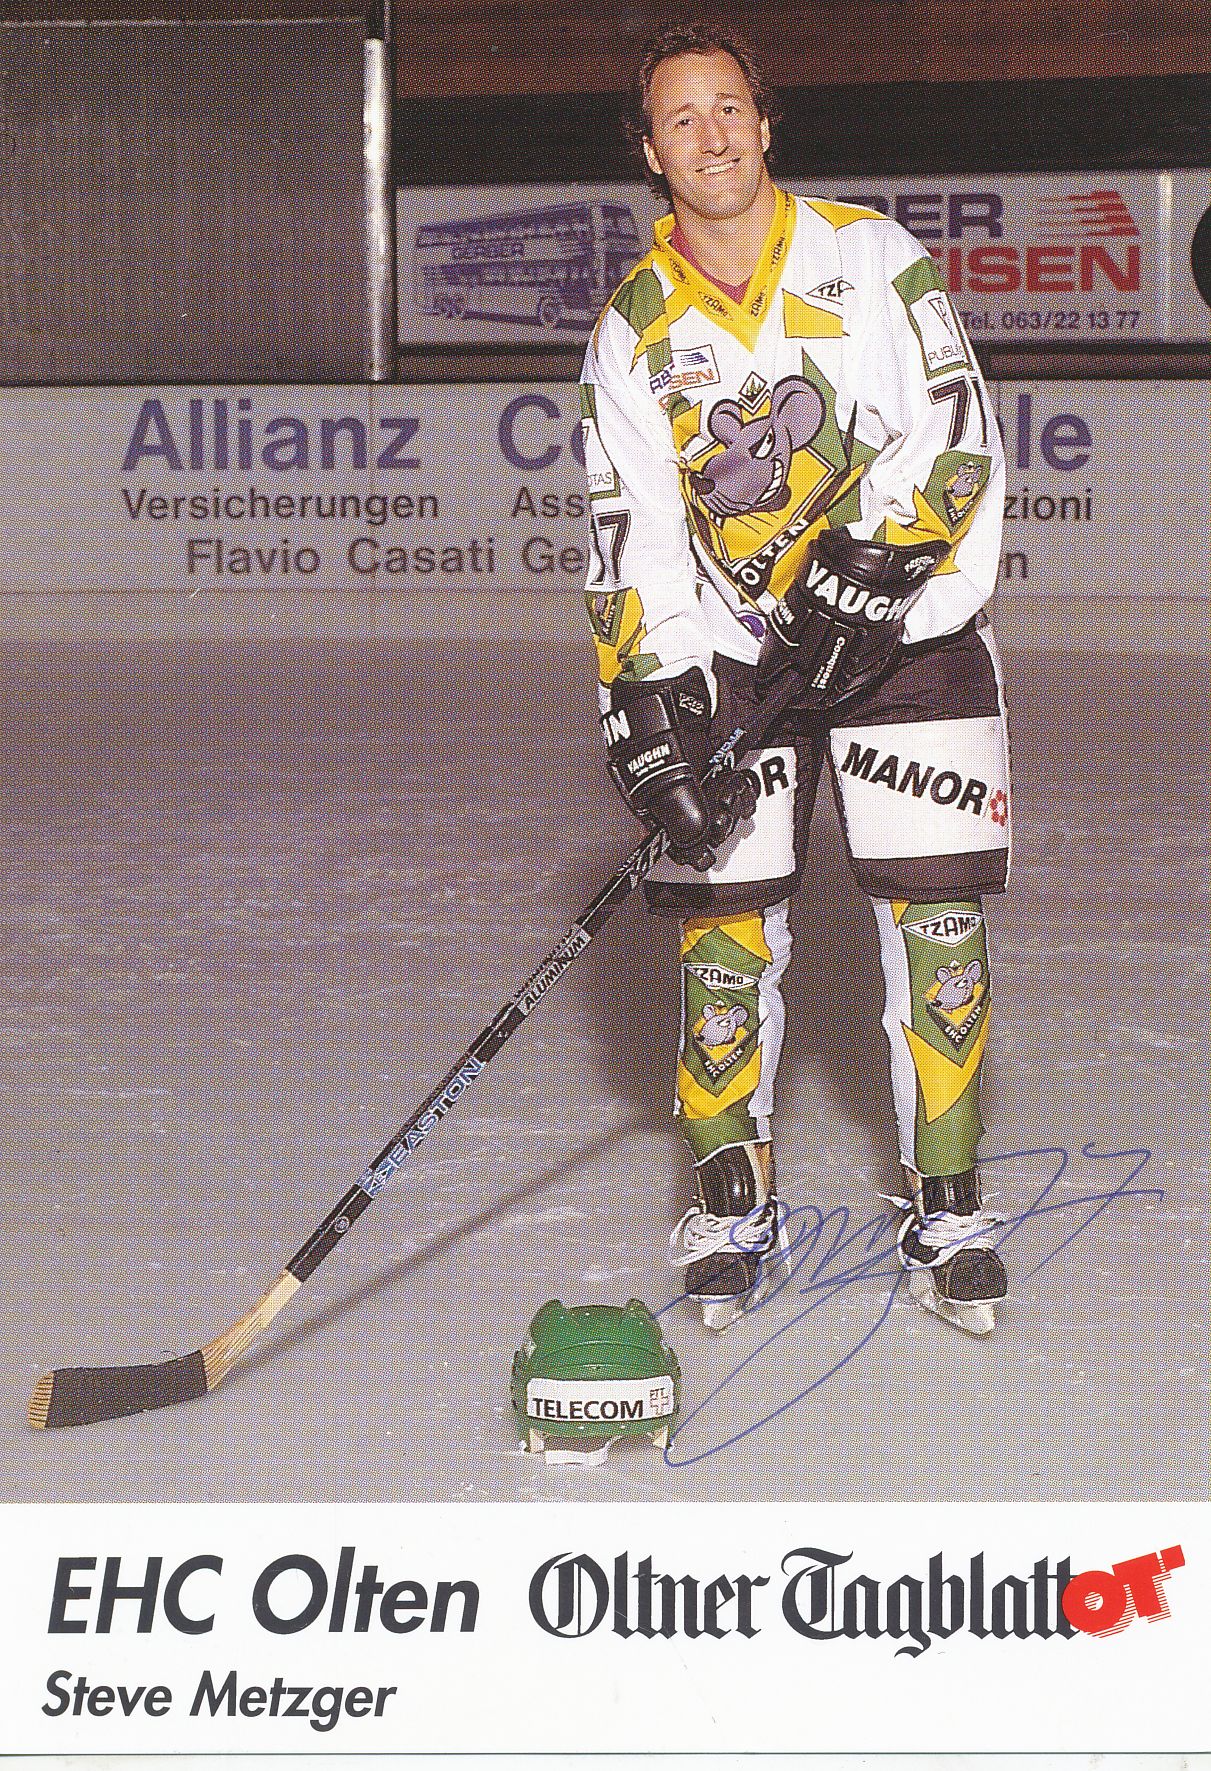 Kelocks Autogramme Steve Metzger EHC Olten Eishockey Autogrammkarte original signiert online kaufen